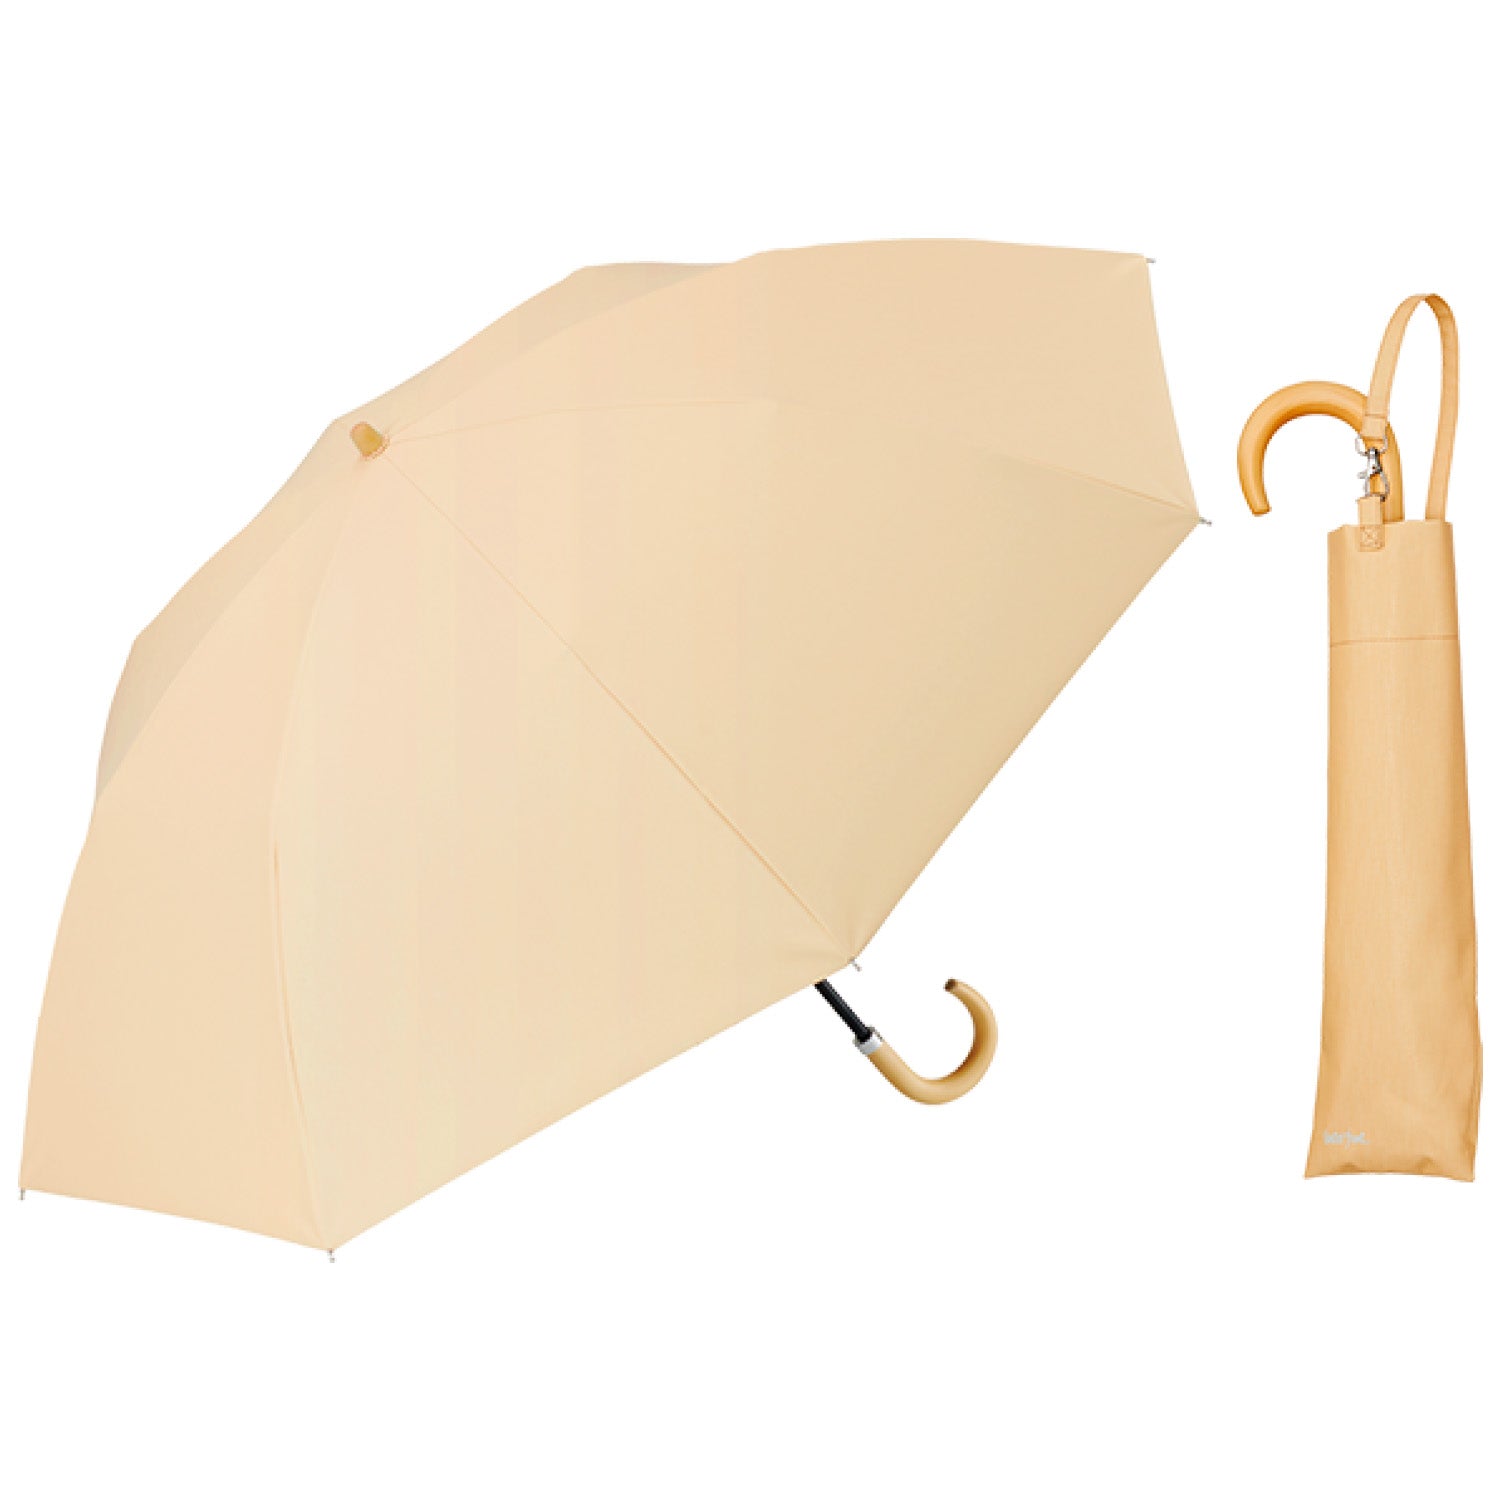 【2段折りたたみ傘】COKAGE+ 遮熱遮光の日傘